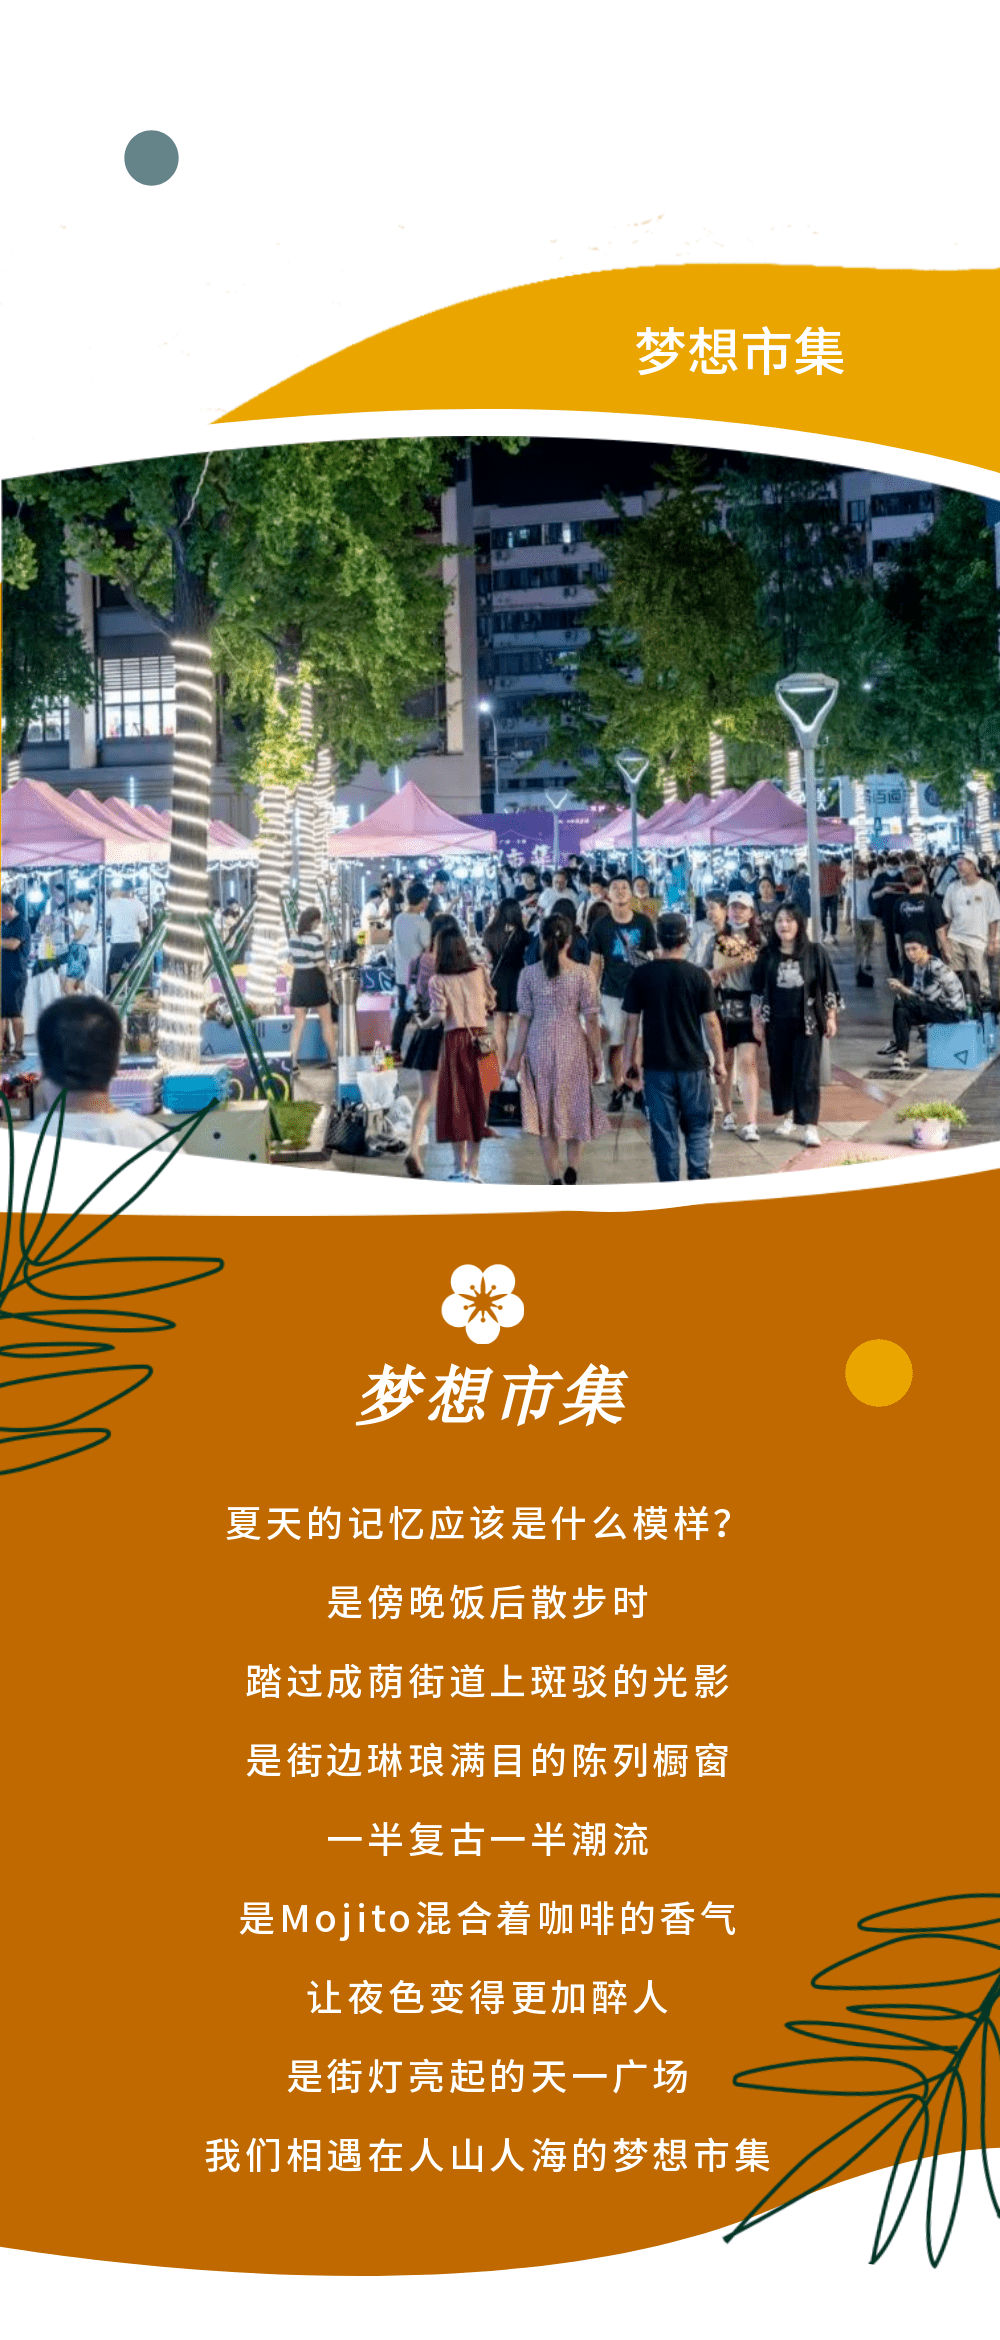 天津市少儿活动中心开设党的二十大学习专区 v7.24.0.61官方正式版